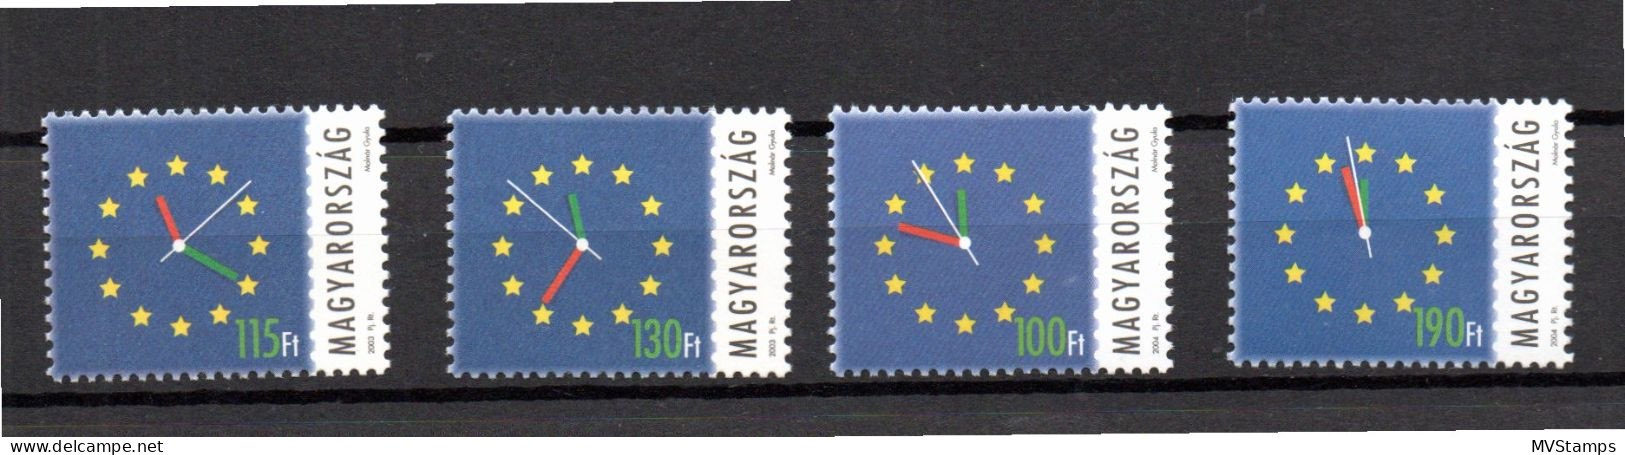 Ungarn 2003/04 Aufnahme Europa Union (Michel 4808, 4814, 4837, 4844) Postfrisch - Ongebruikt